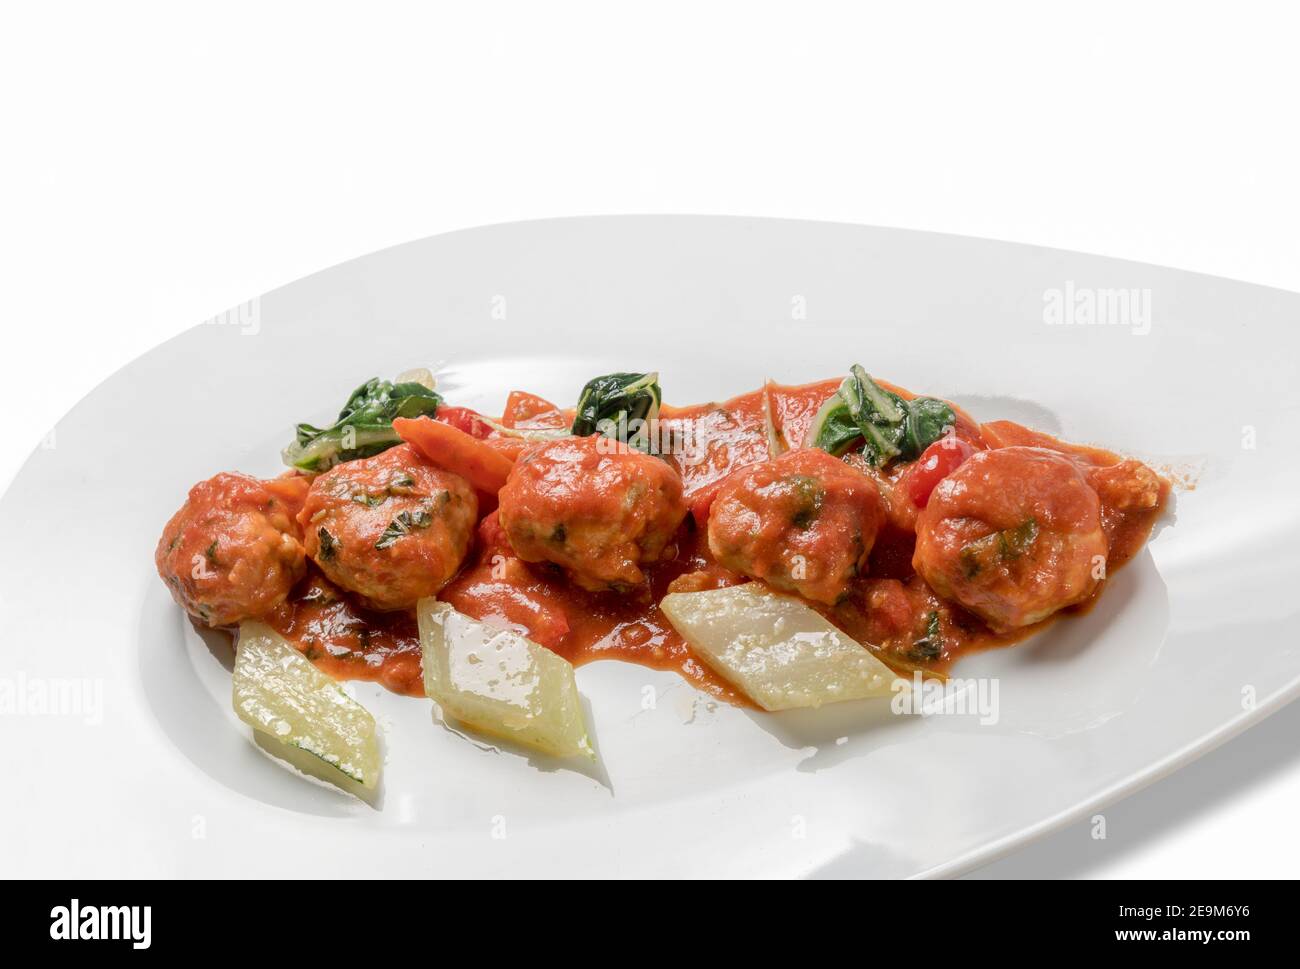 Polpette al Sugo, polpette di manzo con salsa di pomodoro e verdure in piatto bianco isolato su bianco Foto Stock